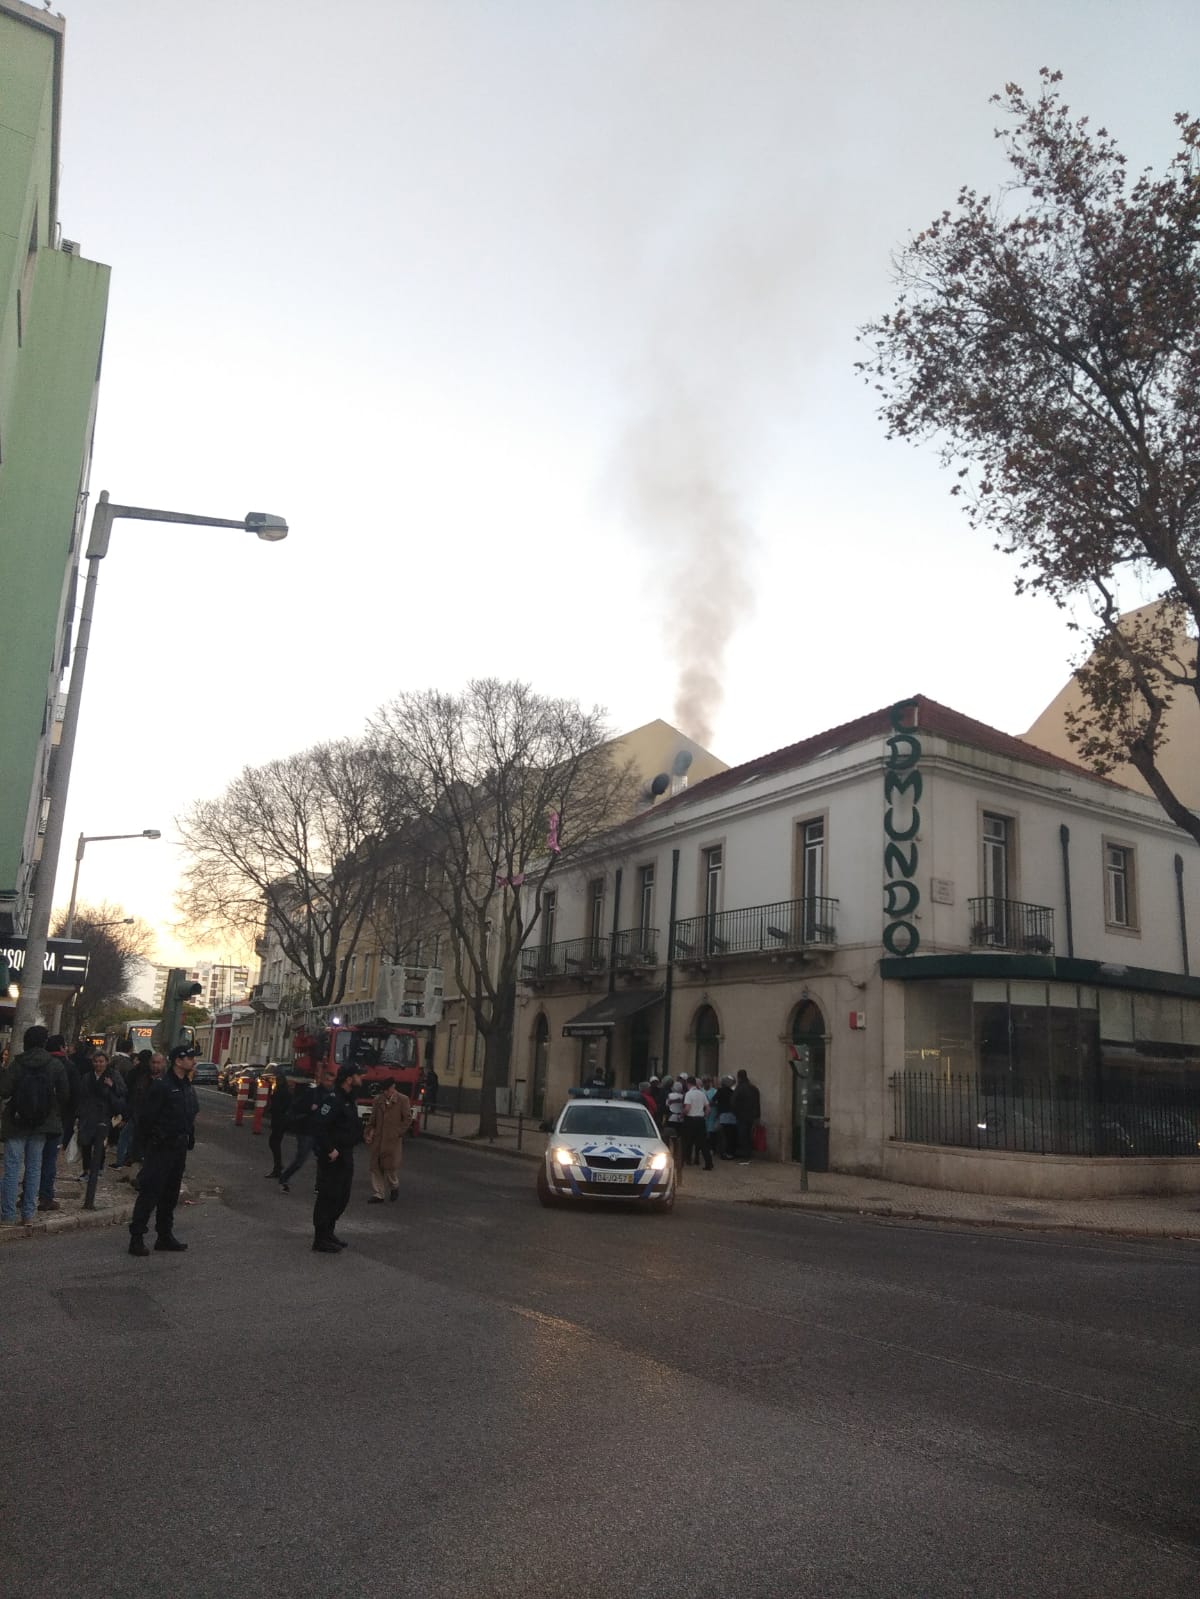 Bombeiros combatem incêndio em restaurante em Benfica